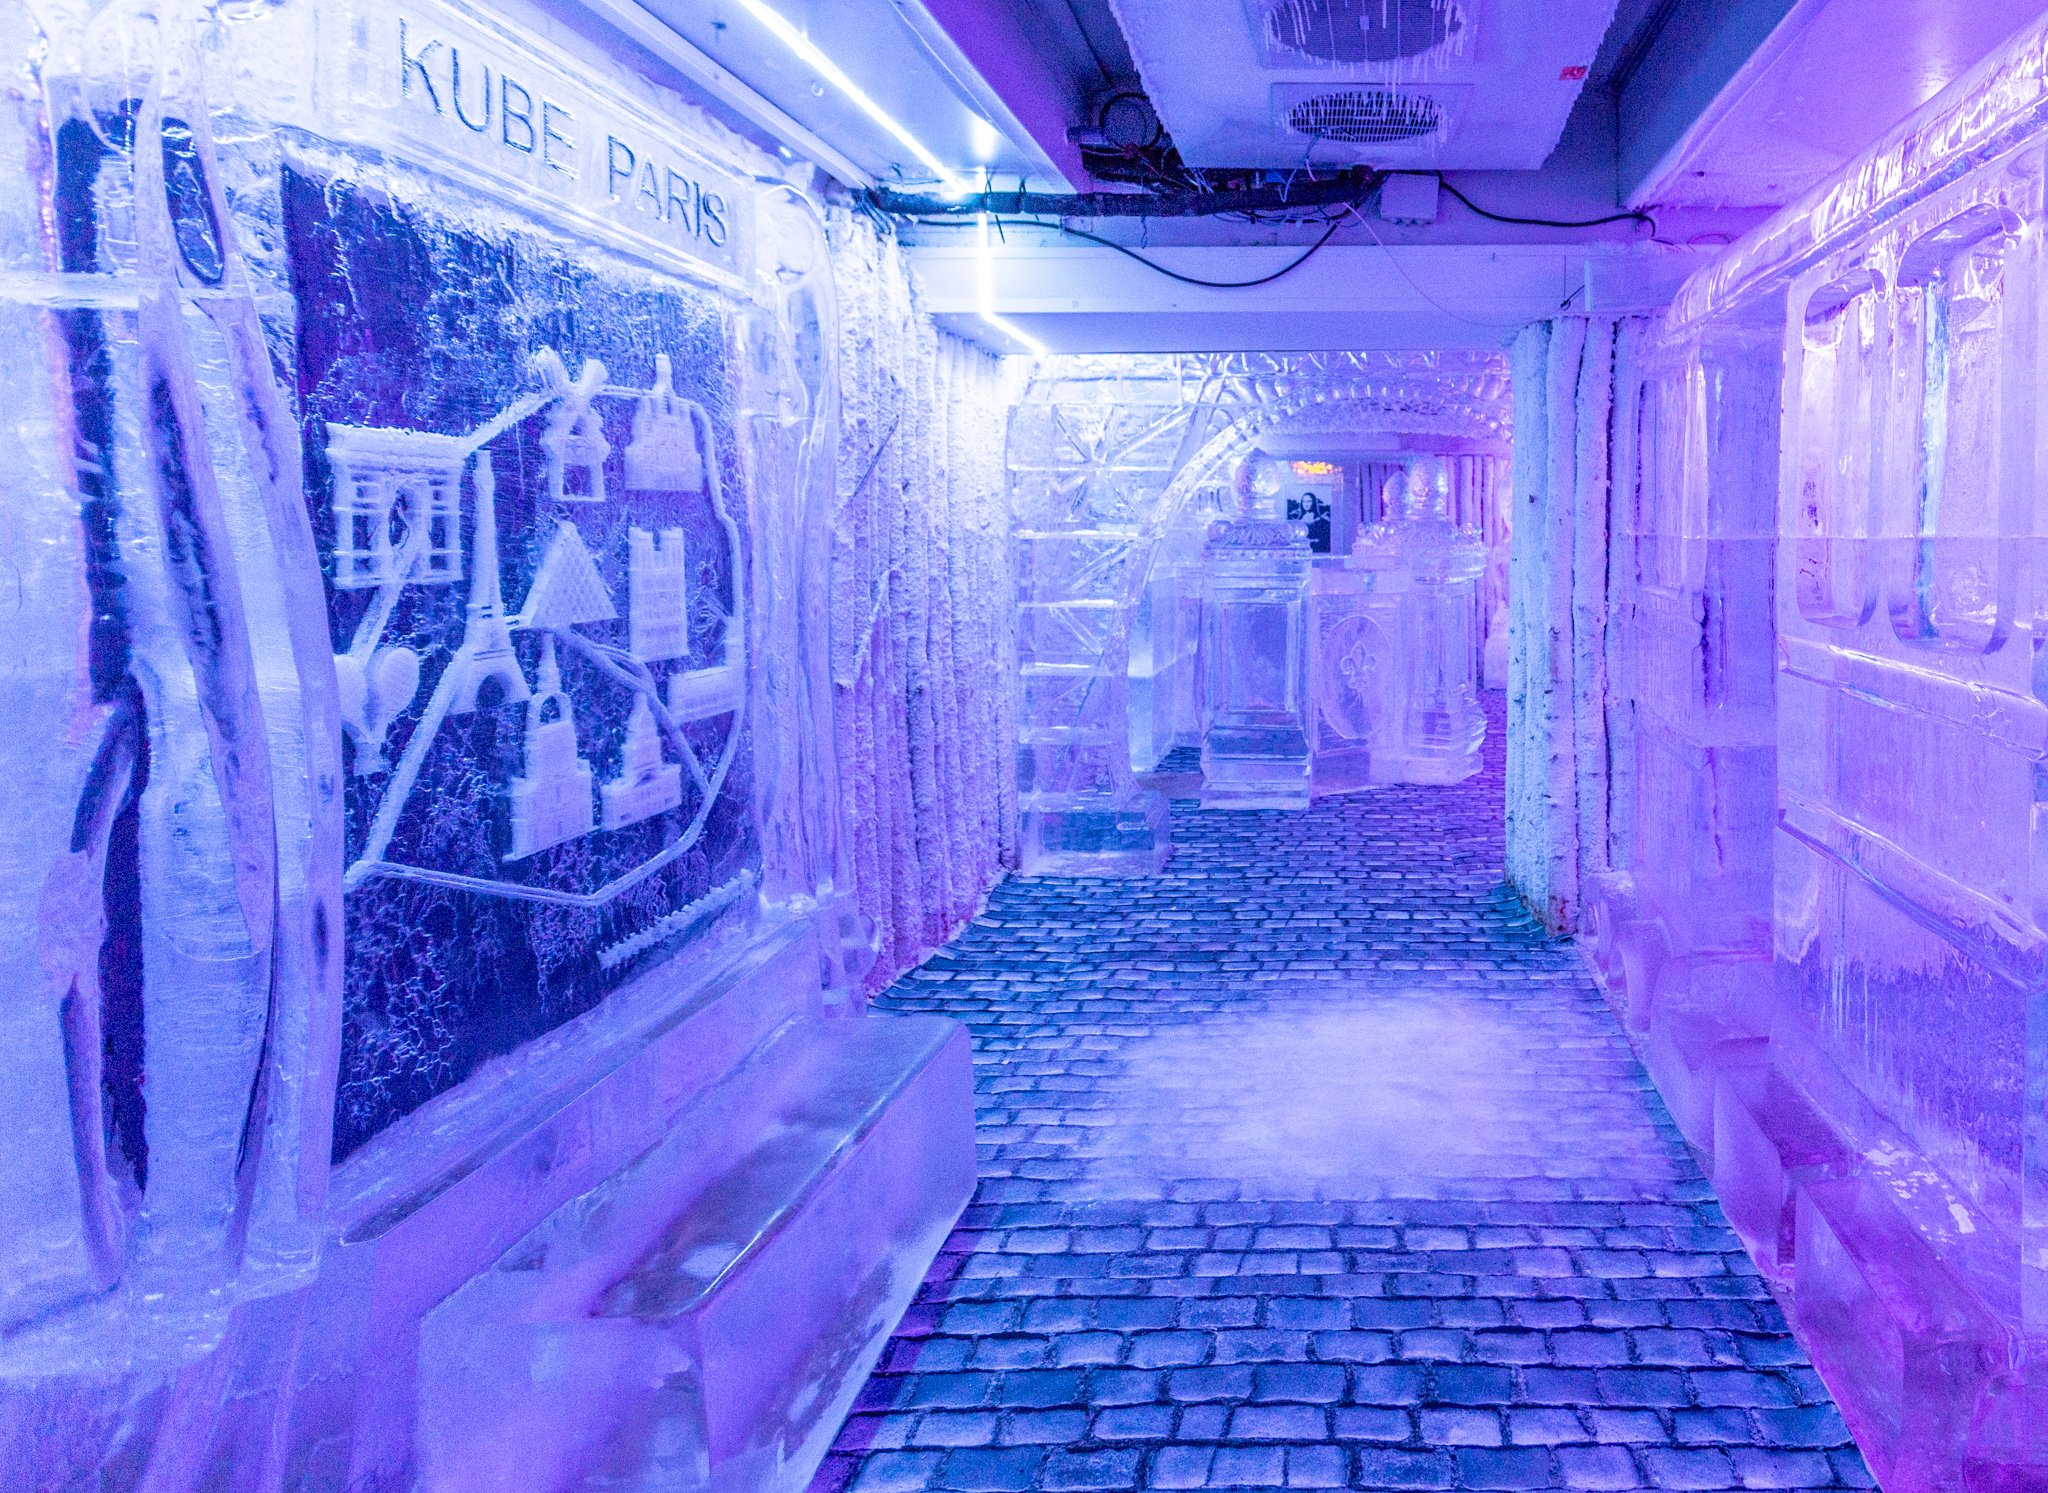 Ice Kube Paris - Le Seul Ice Bar à Paris - Expérience Insolite Paris